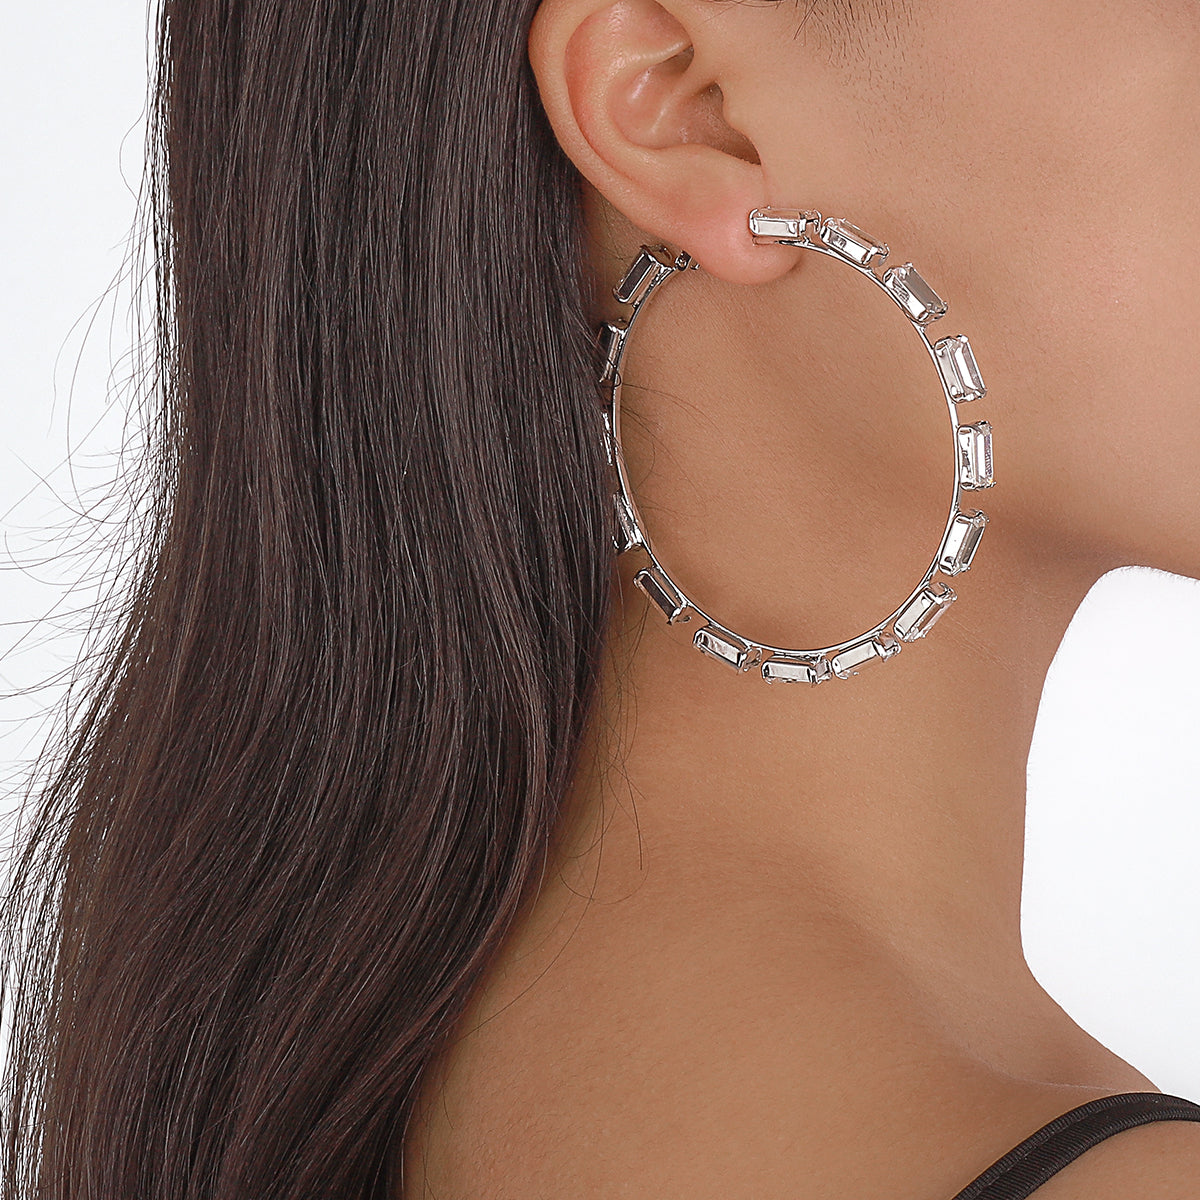 Crystal & Silver-Plated Baguette-Cut Hoop Earrings